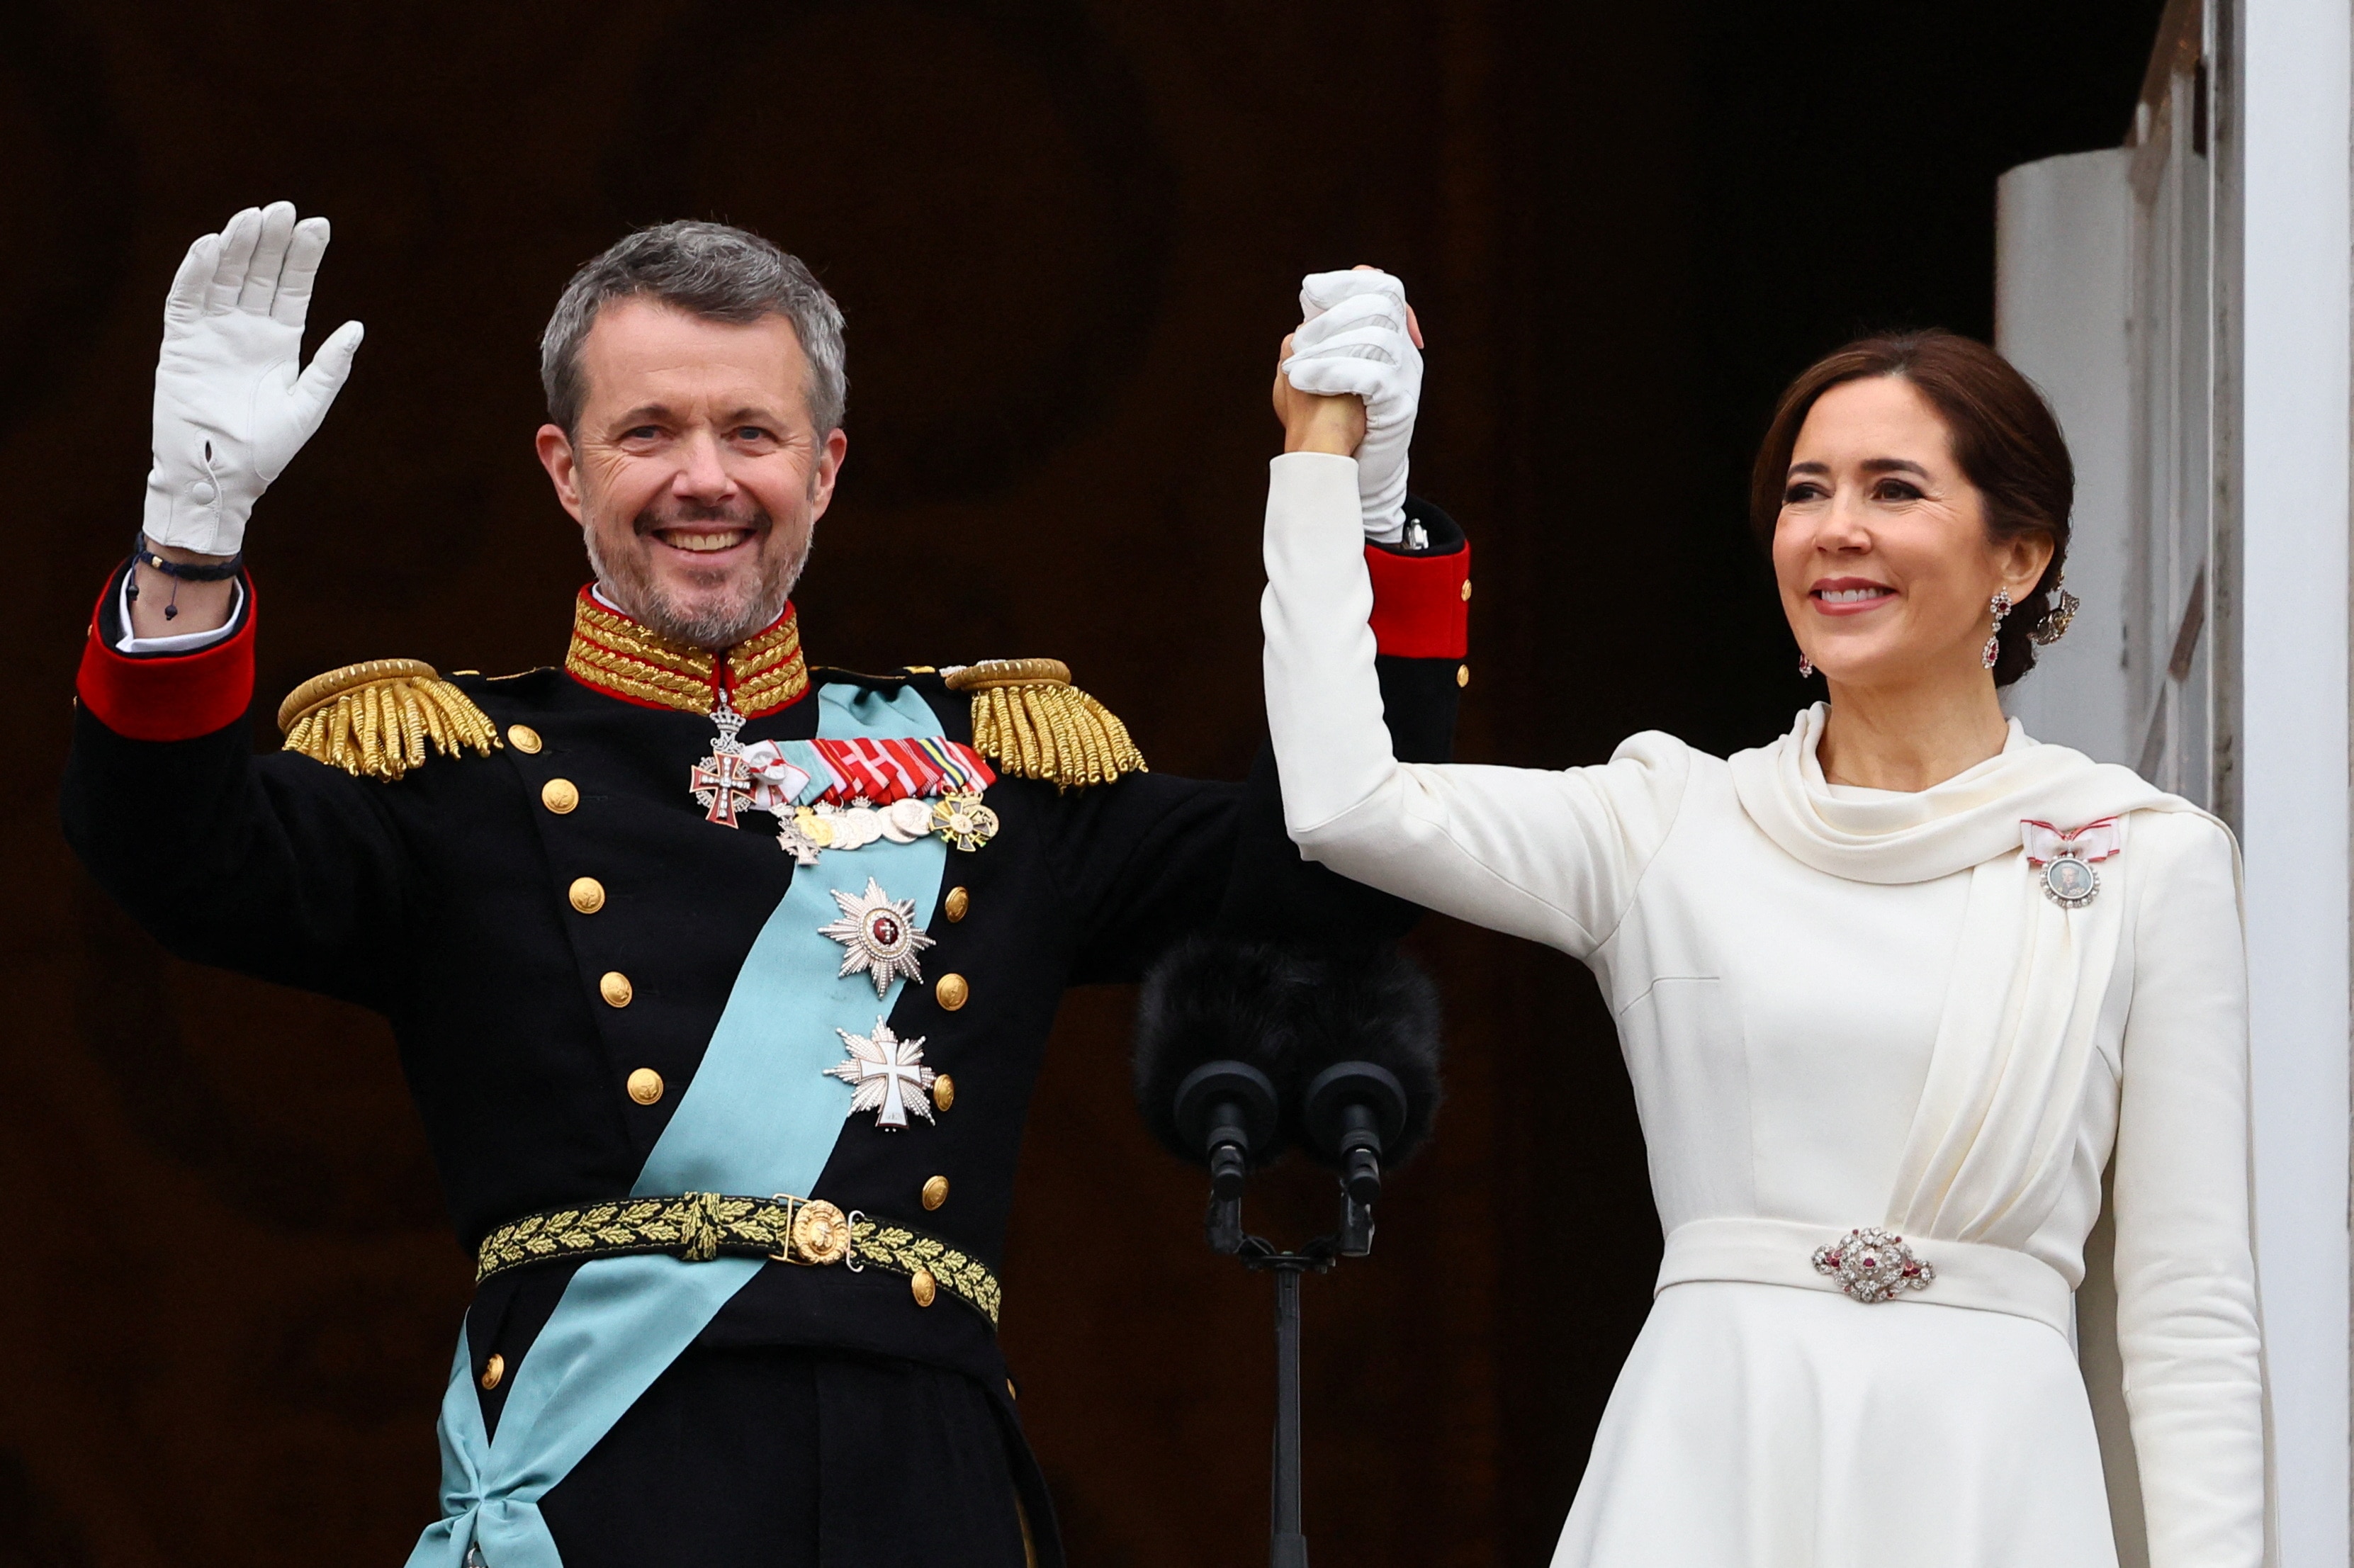 Denmark's Queen Margrethe officially abdicates the